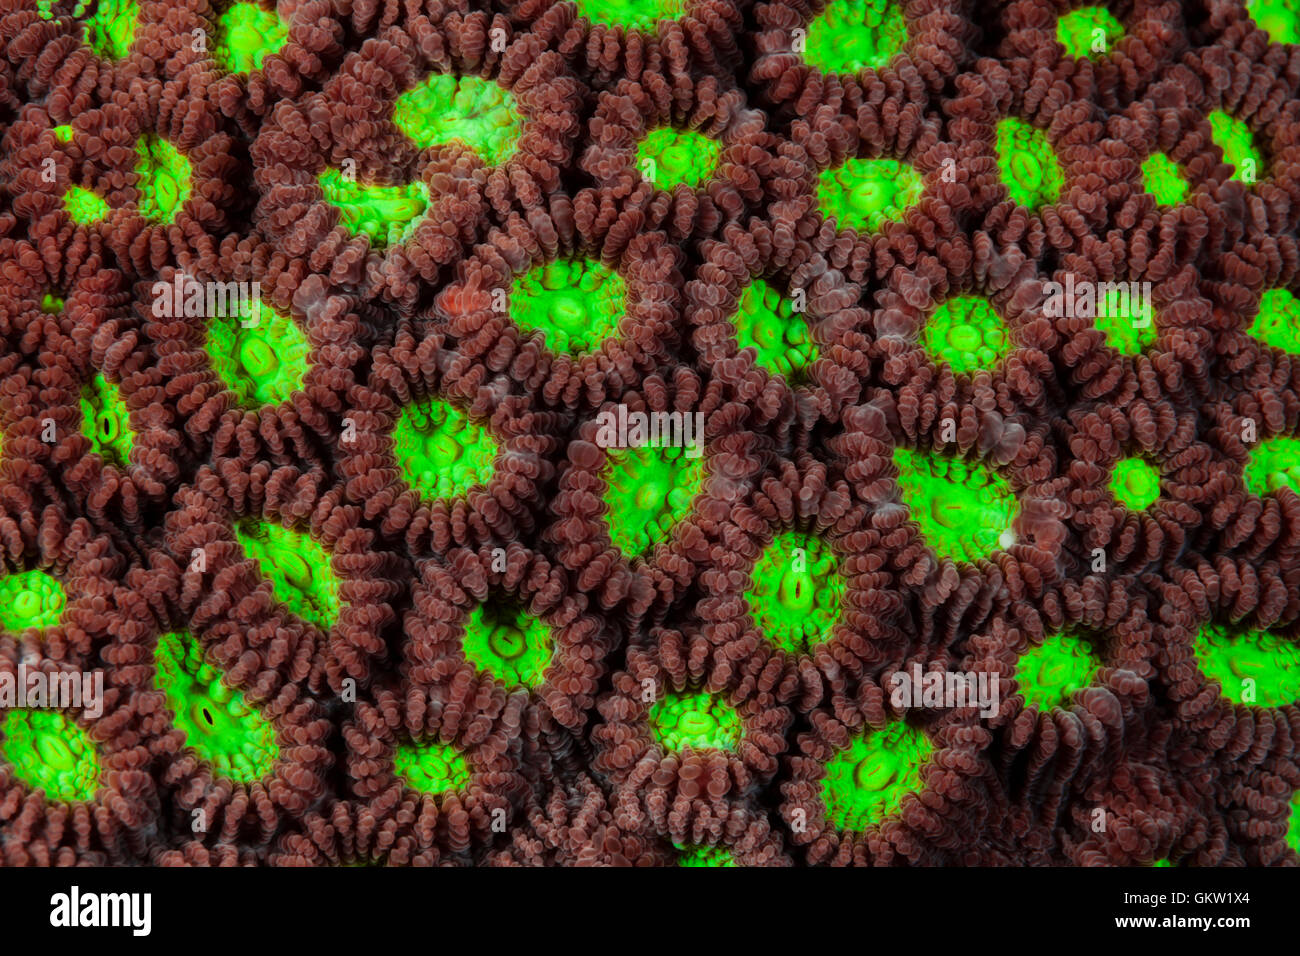 Los pólipos de coral piedra fluorescentes, Favia sp., Ambon, en las Molucas, Indonesia Foto de stock